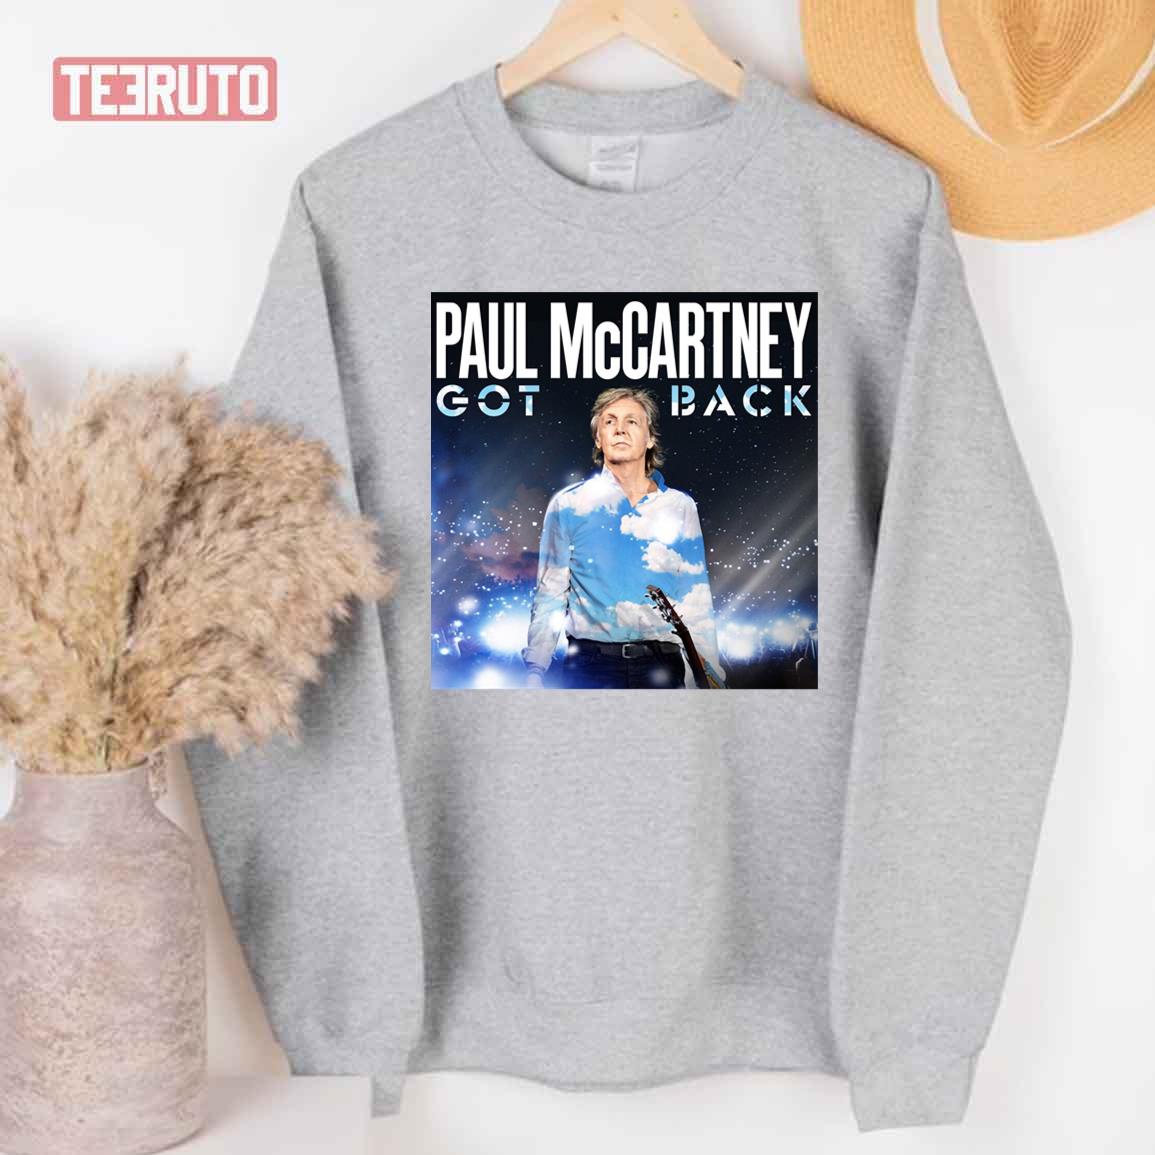 Paul McCartney Summer Tour Got Back Unisex T-Shirt